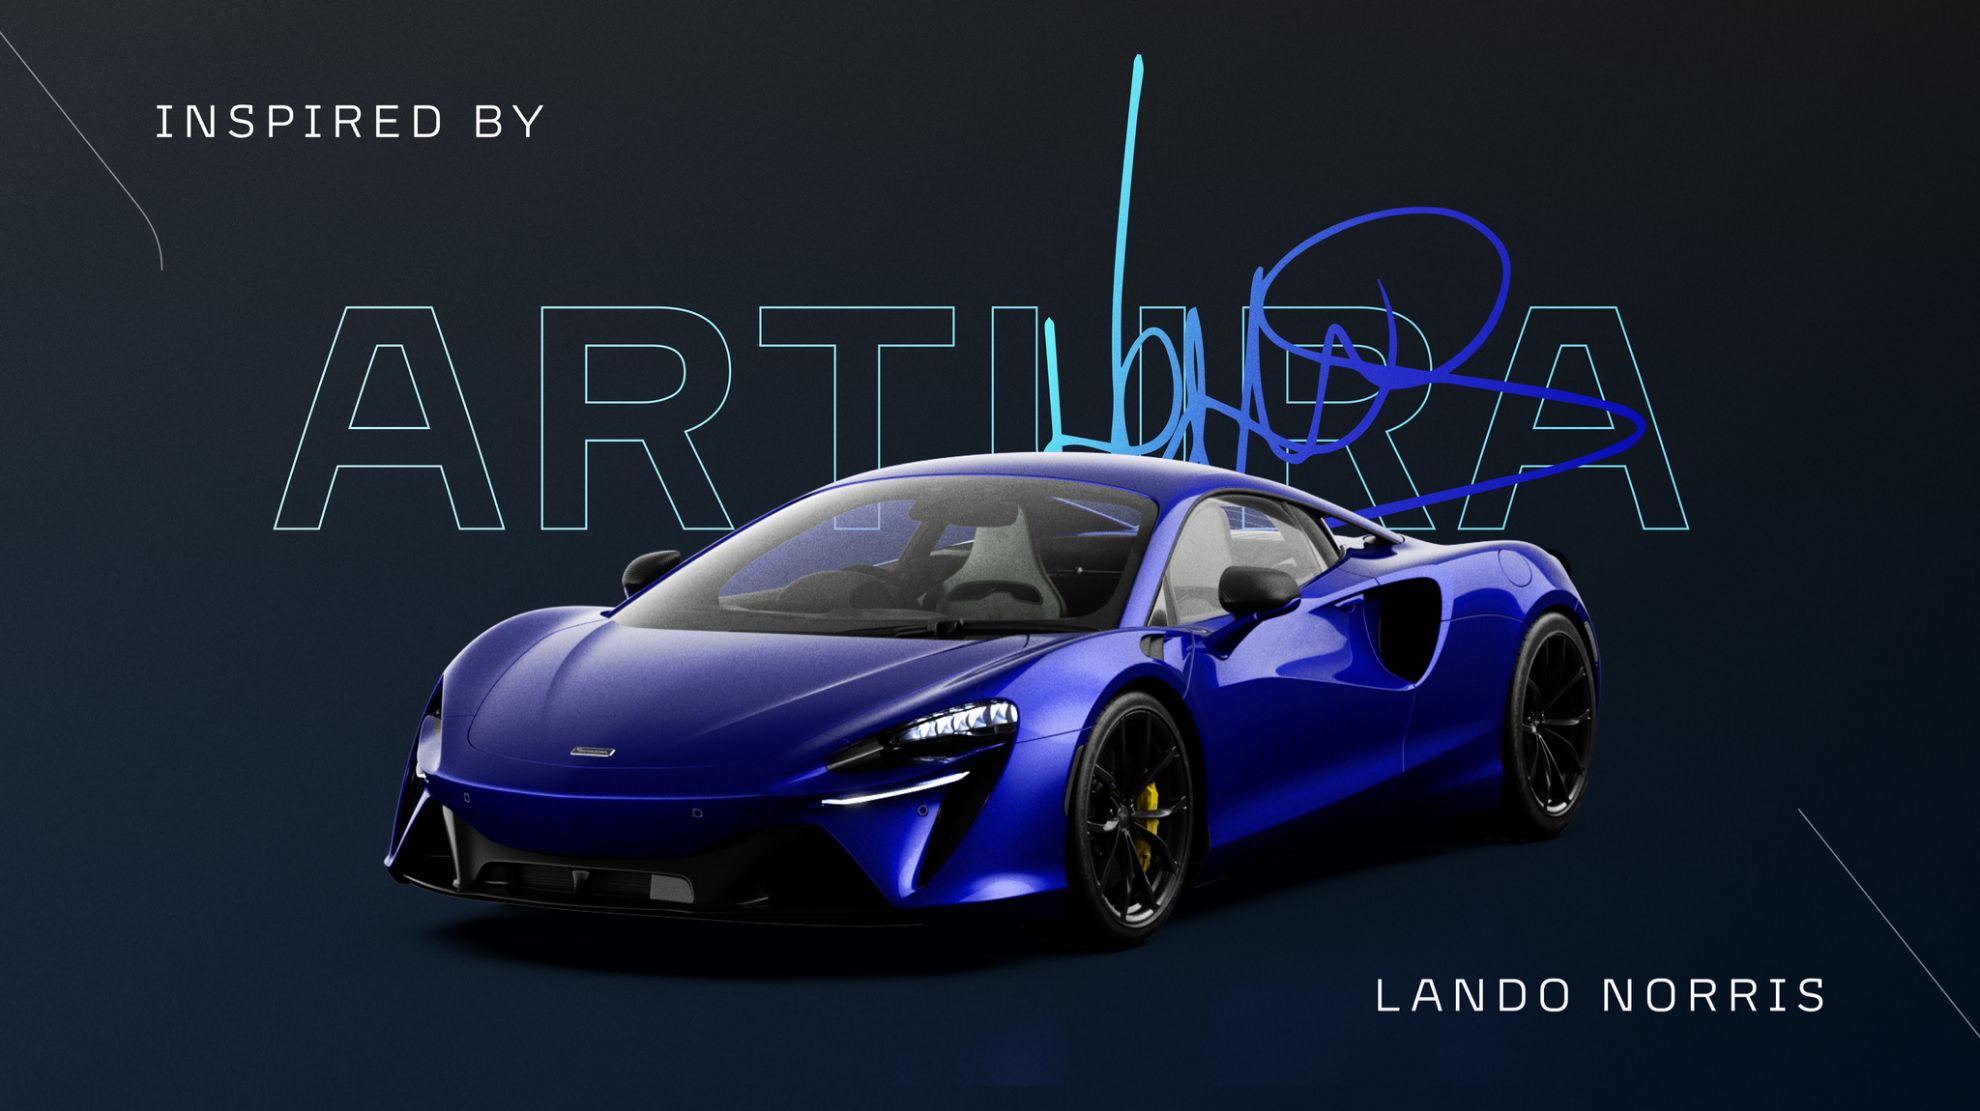 As es el McLaren Artura personalizado por Lando Norris.